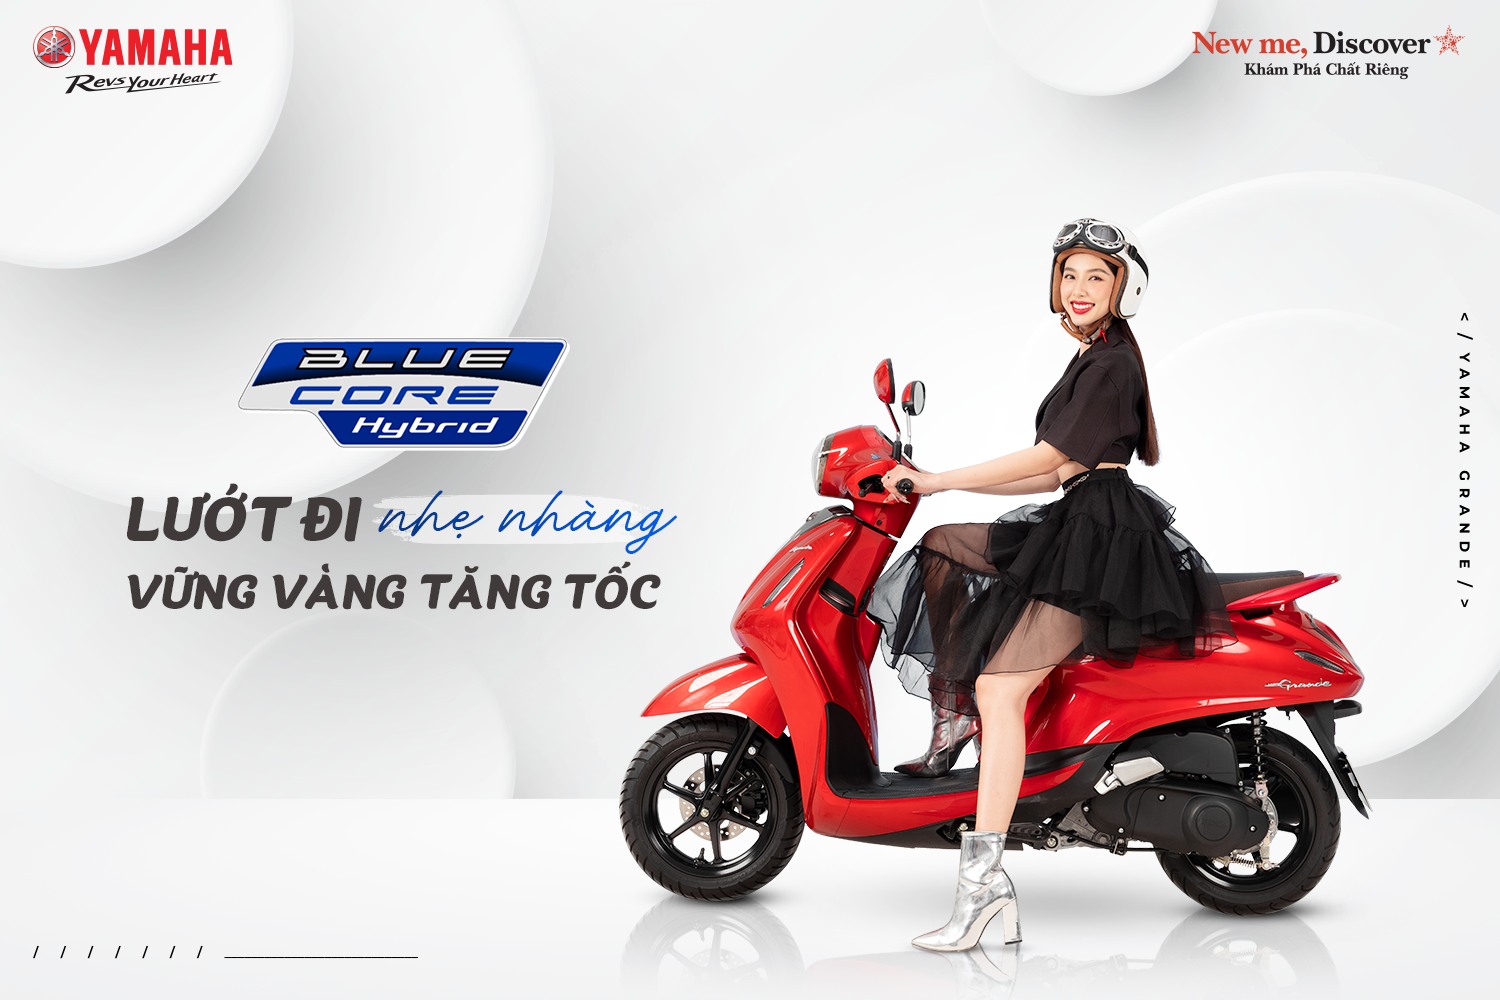 Yamaha Grande là mẫu xe tay ga nữ tiết kiệm nhiên liệu hàng đầu tại Việt Nam